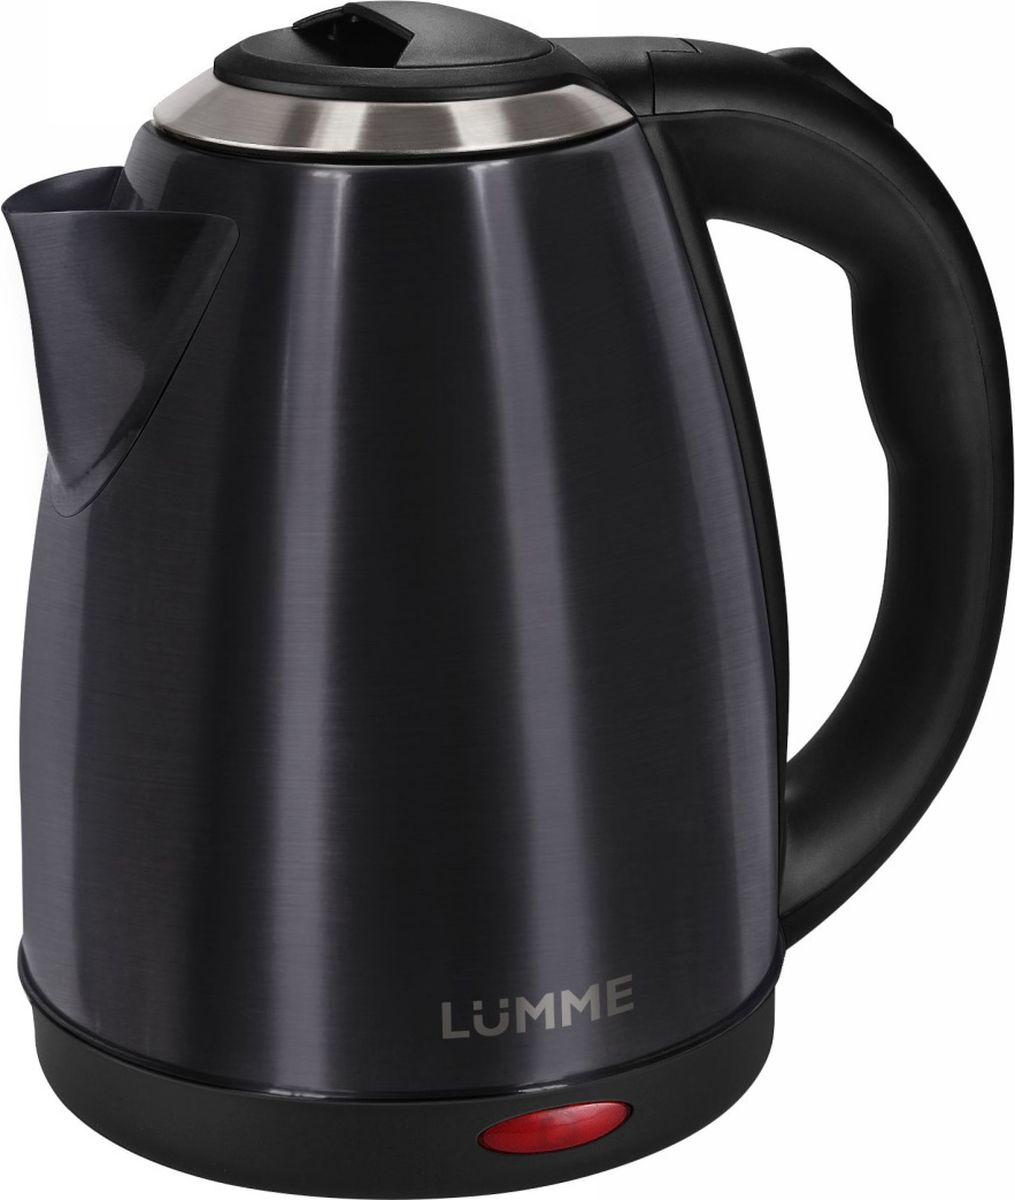 Lumme LU-132, Black Jade чайник электрический